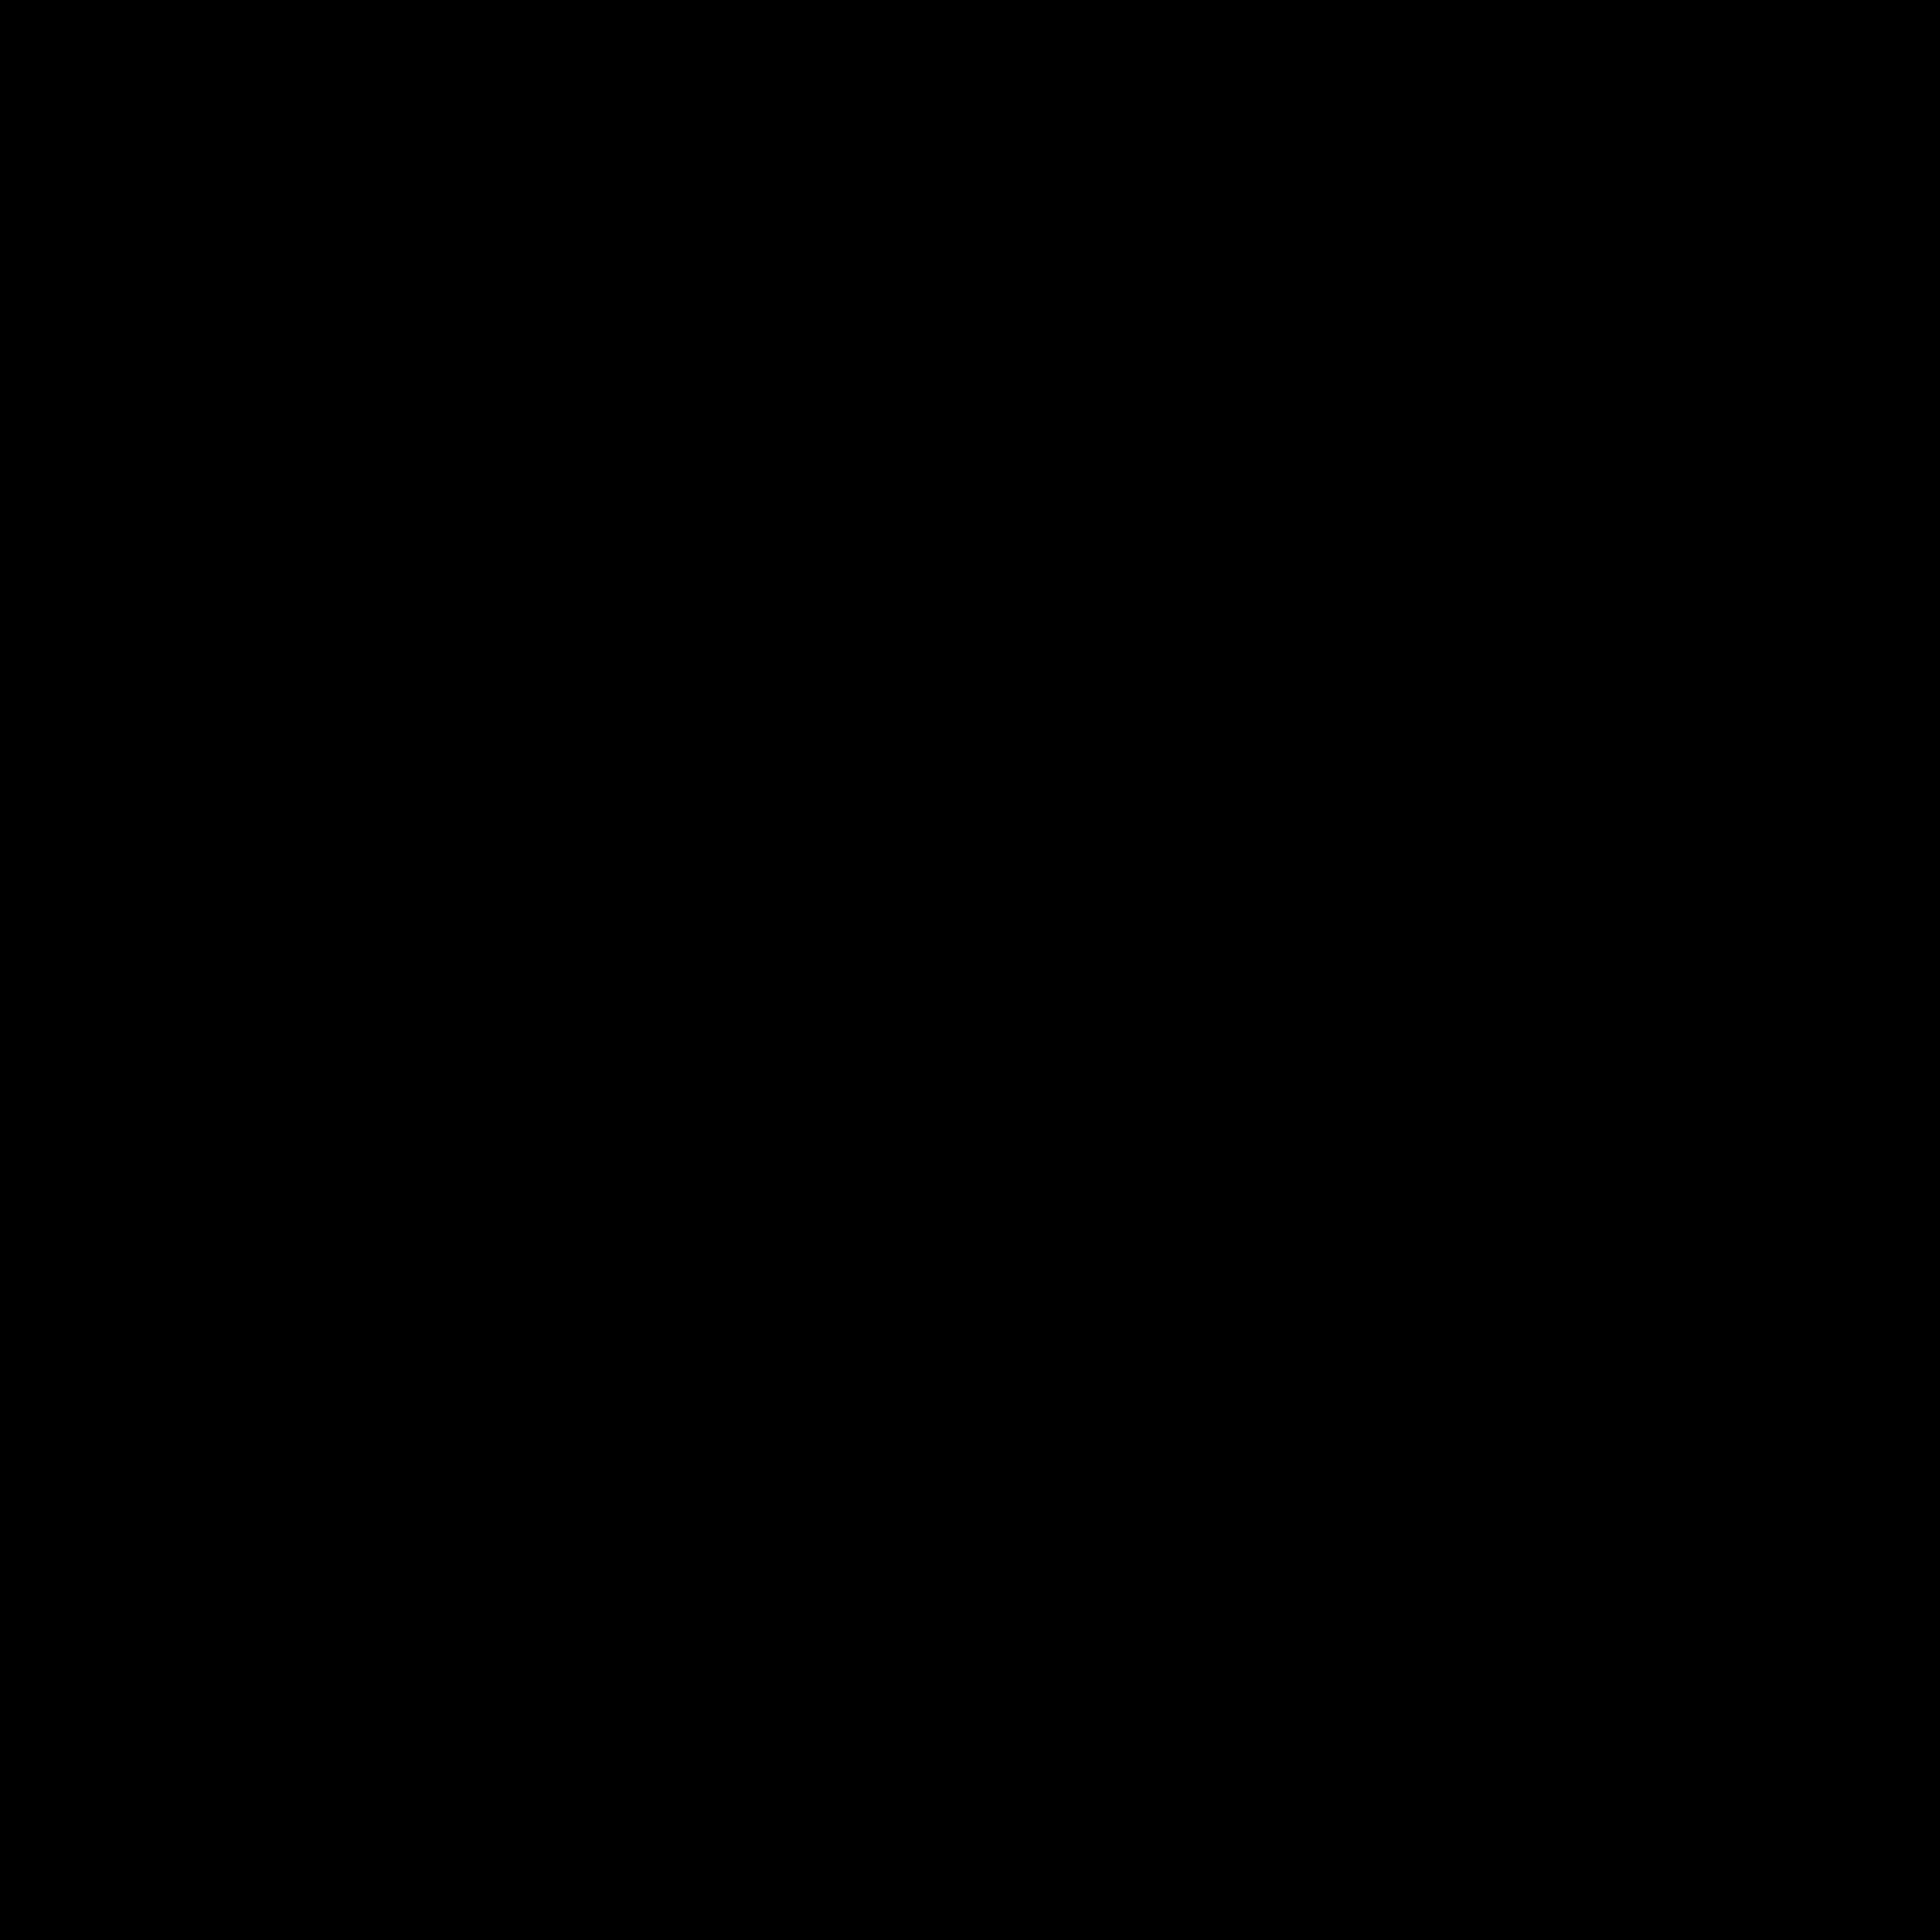 Logo CiRou - Chauffeur- und Limousinenservice München